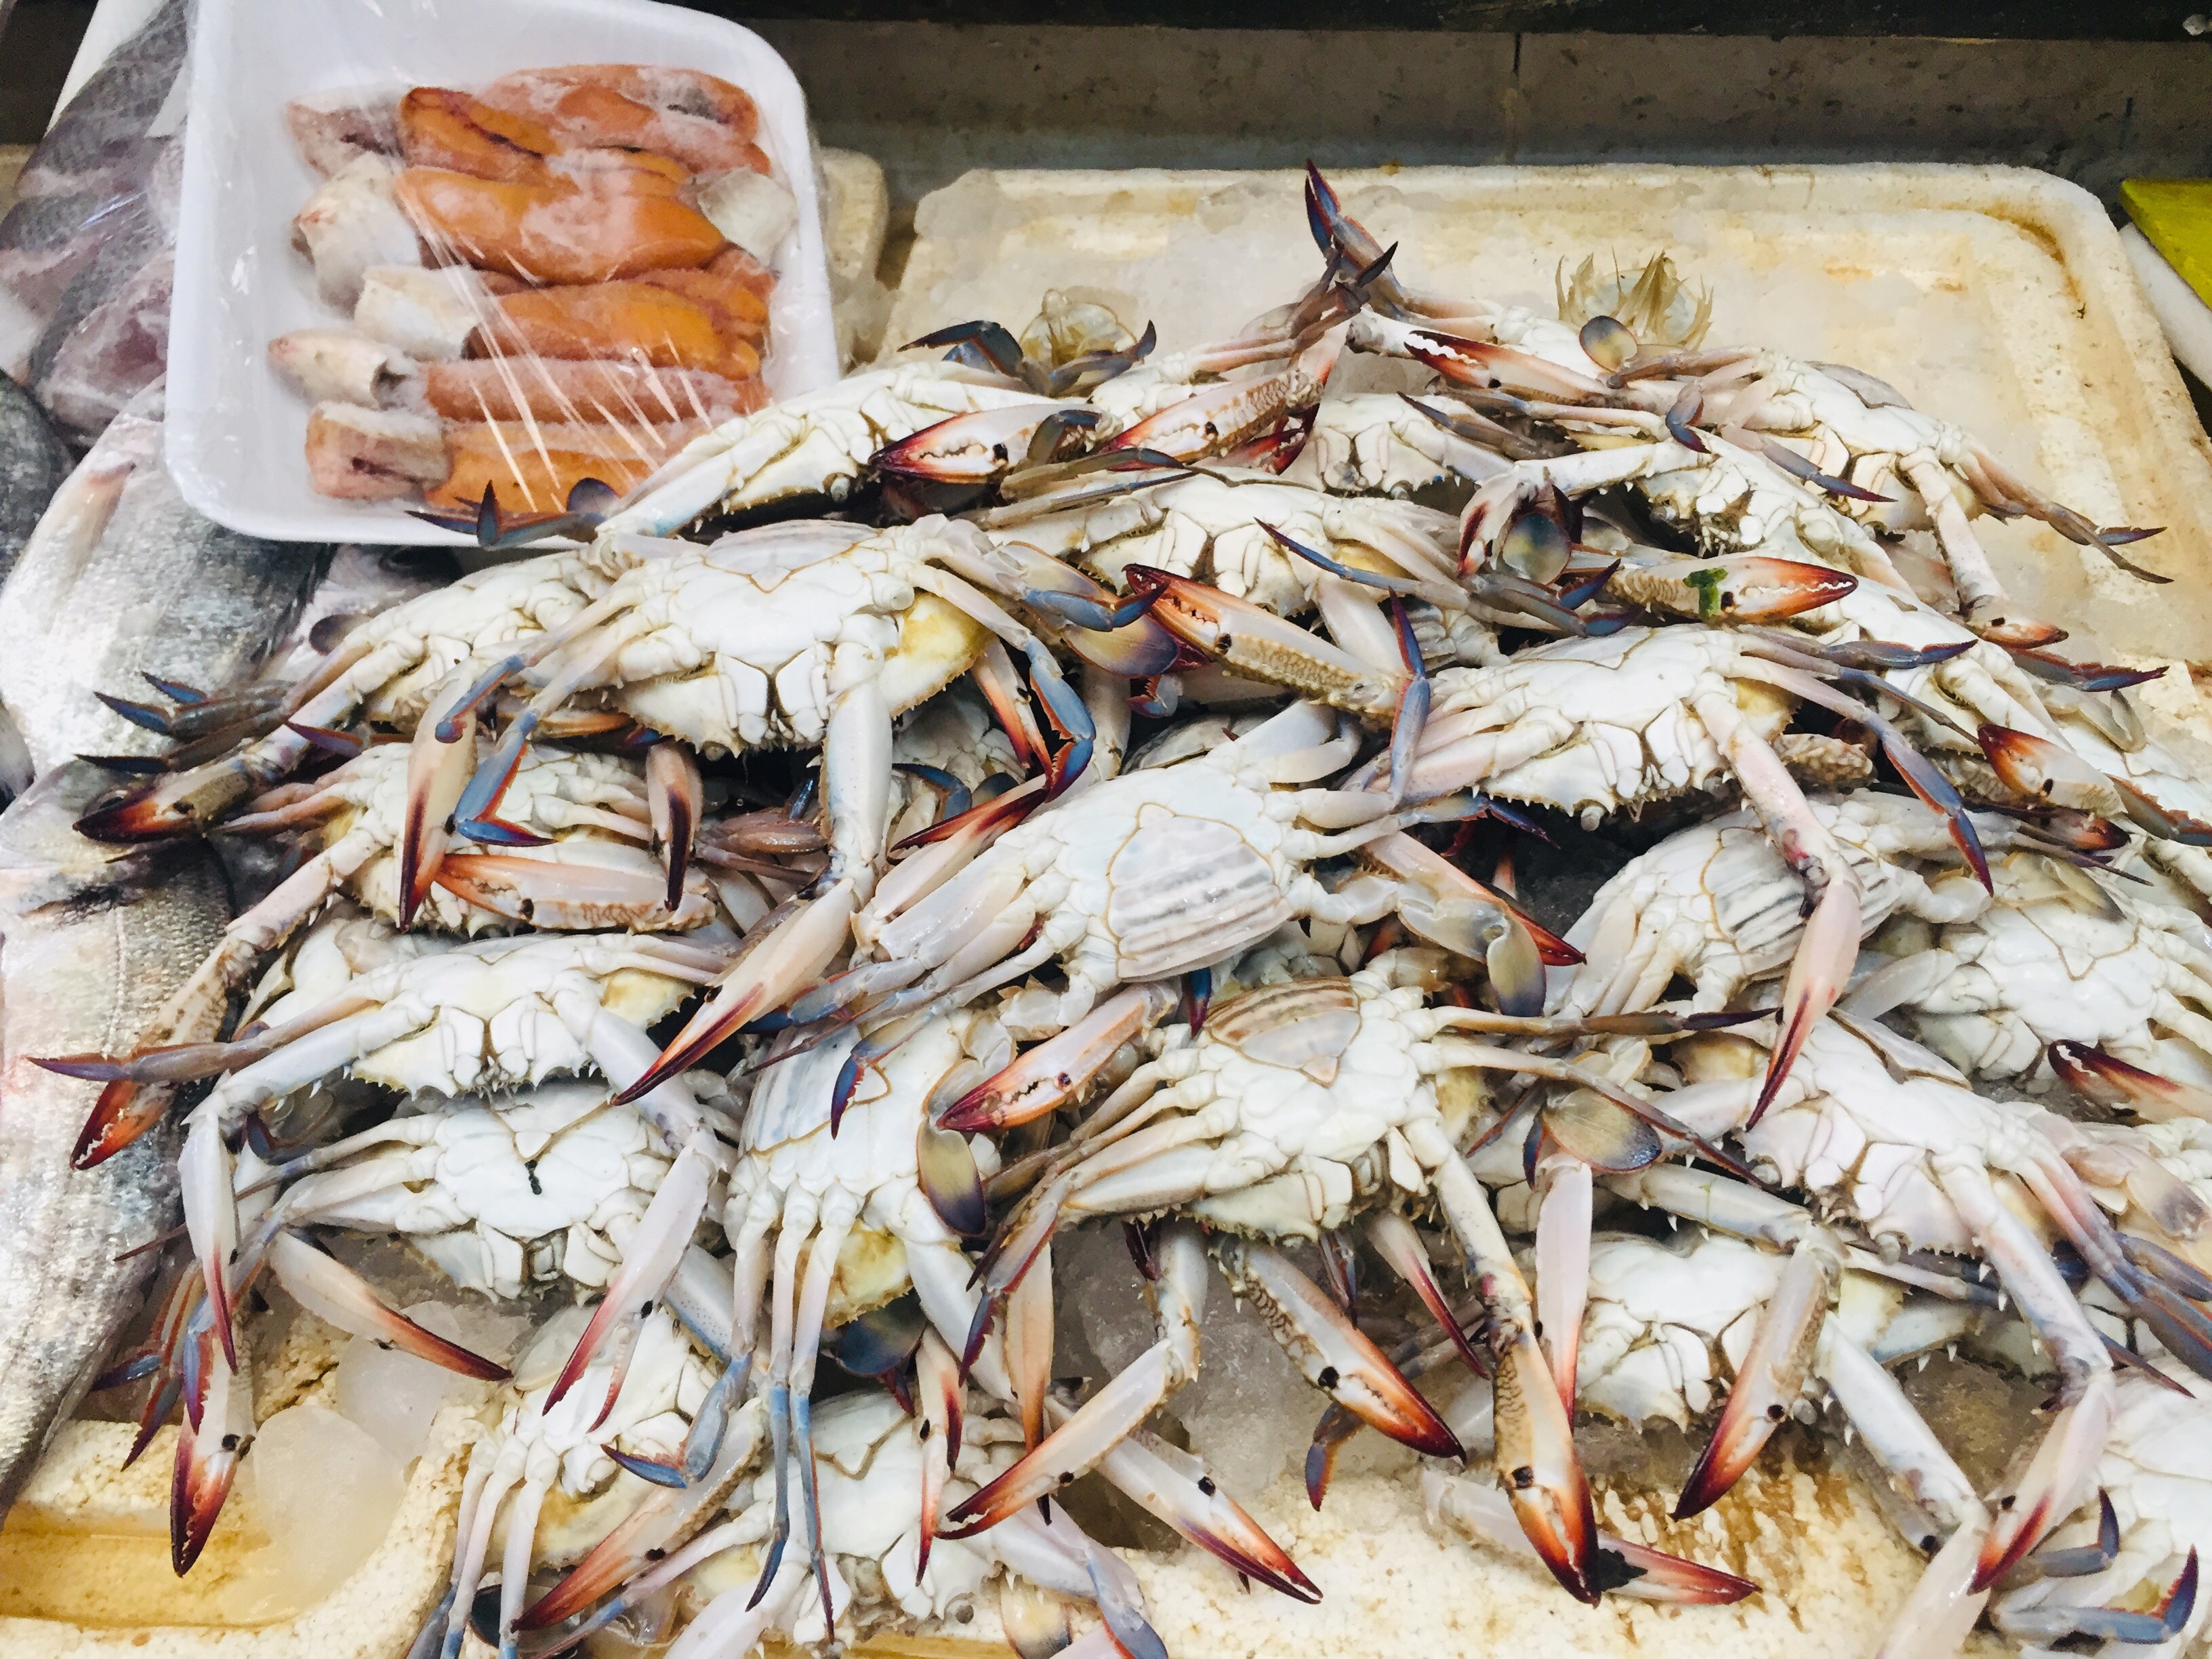  سوق بورسعيد للأسماك بمحافظة الإسماعيلية (5)